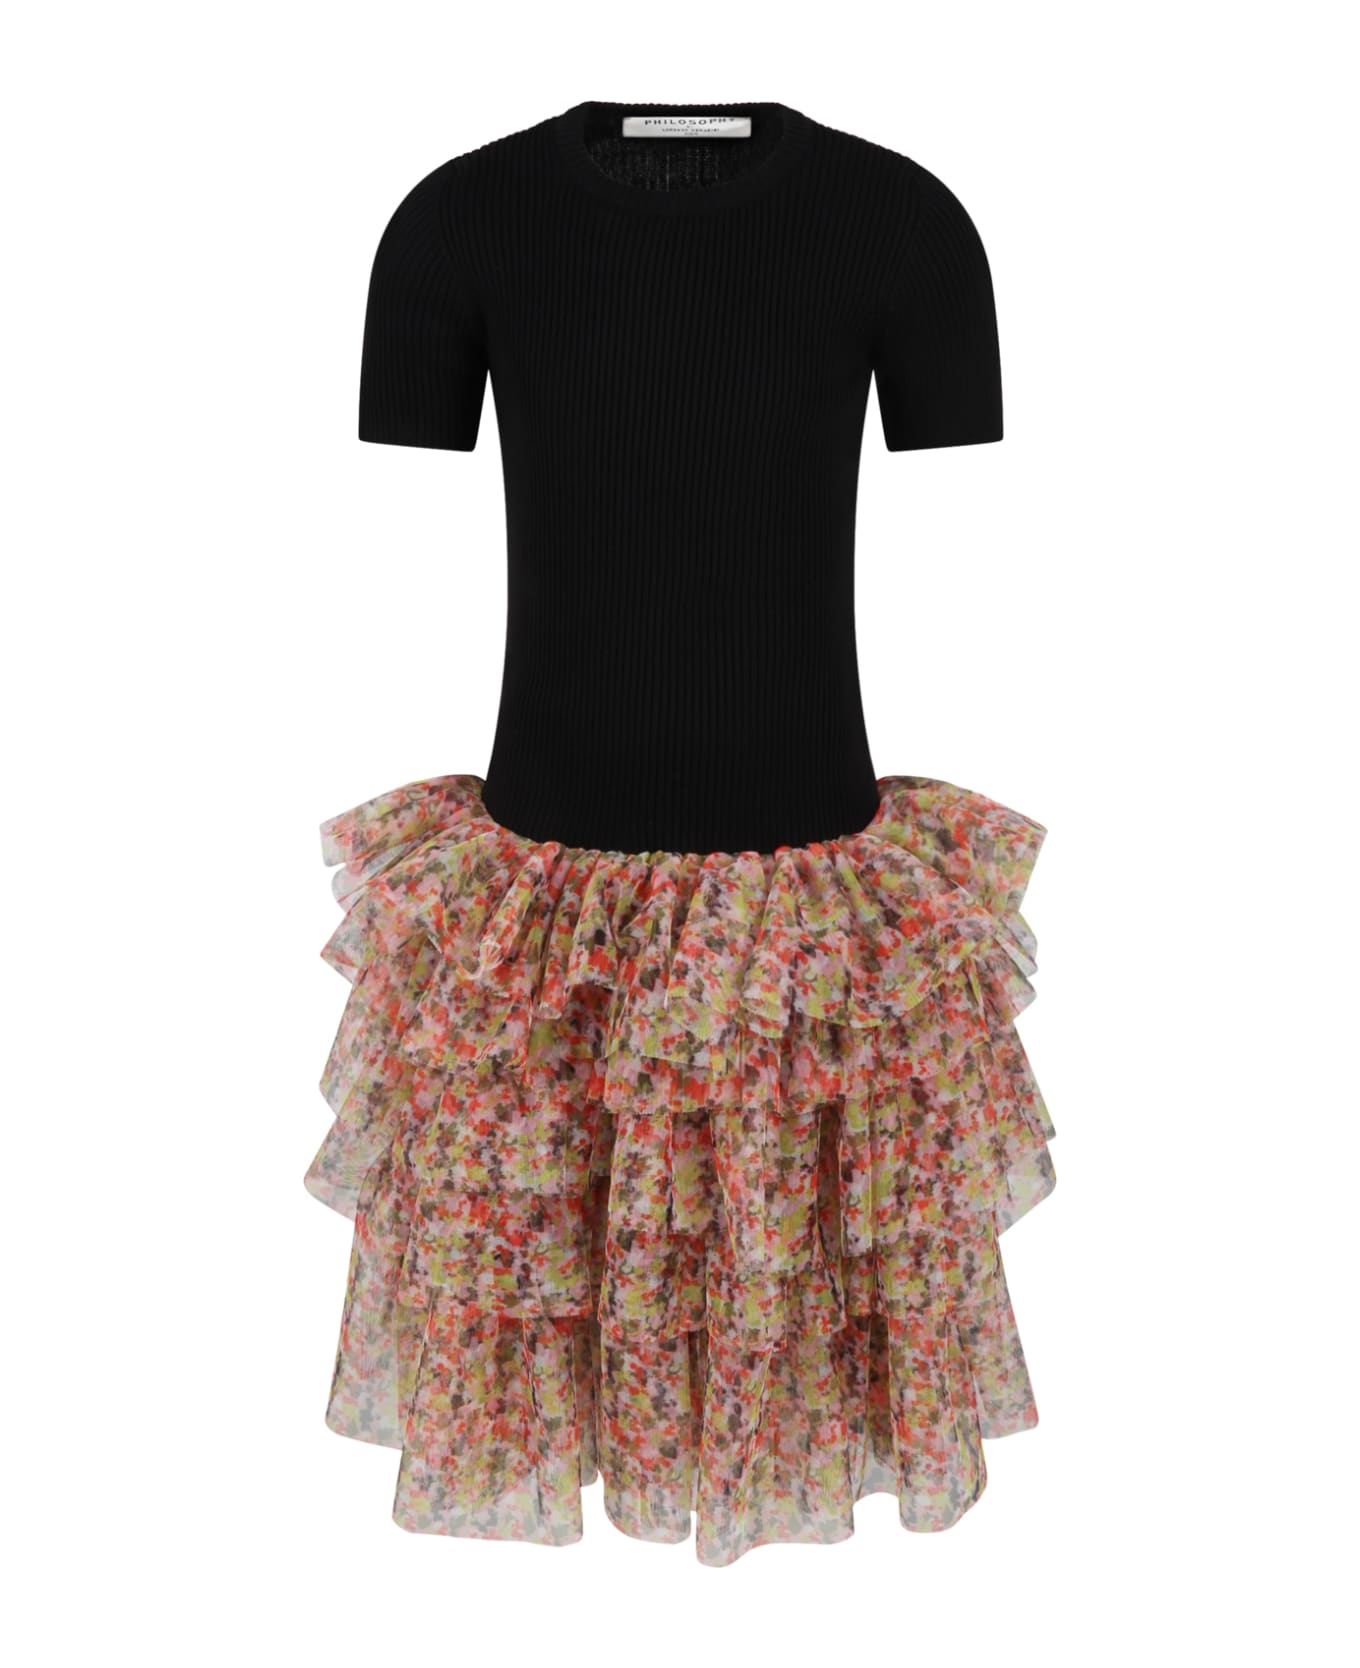 Philosophy di Lorenzo Serafini Kids Black Dress For Girl - Multicolor